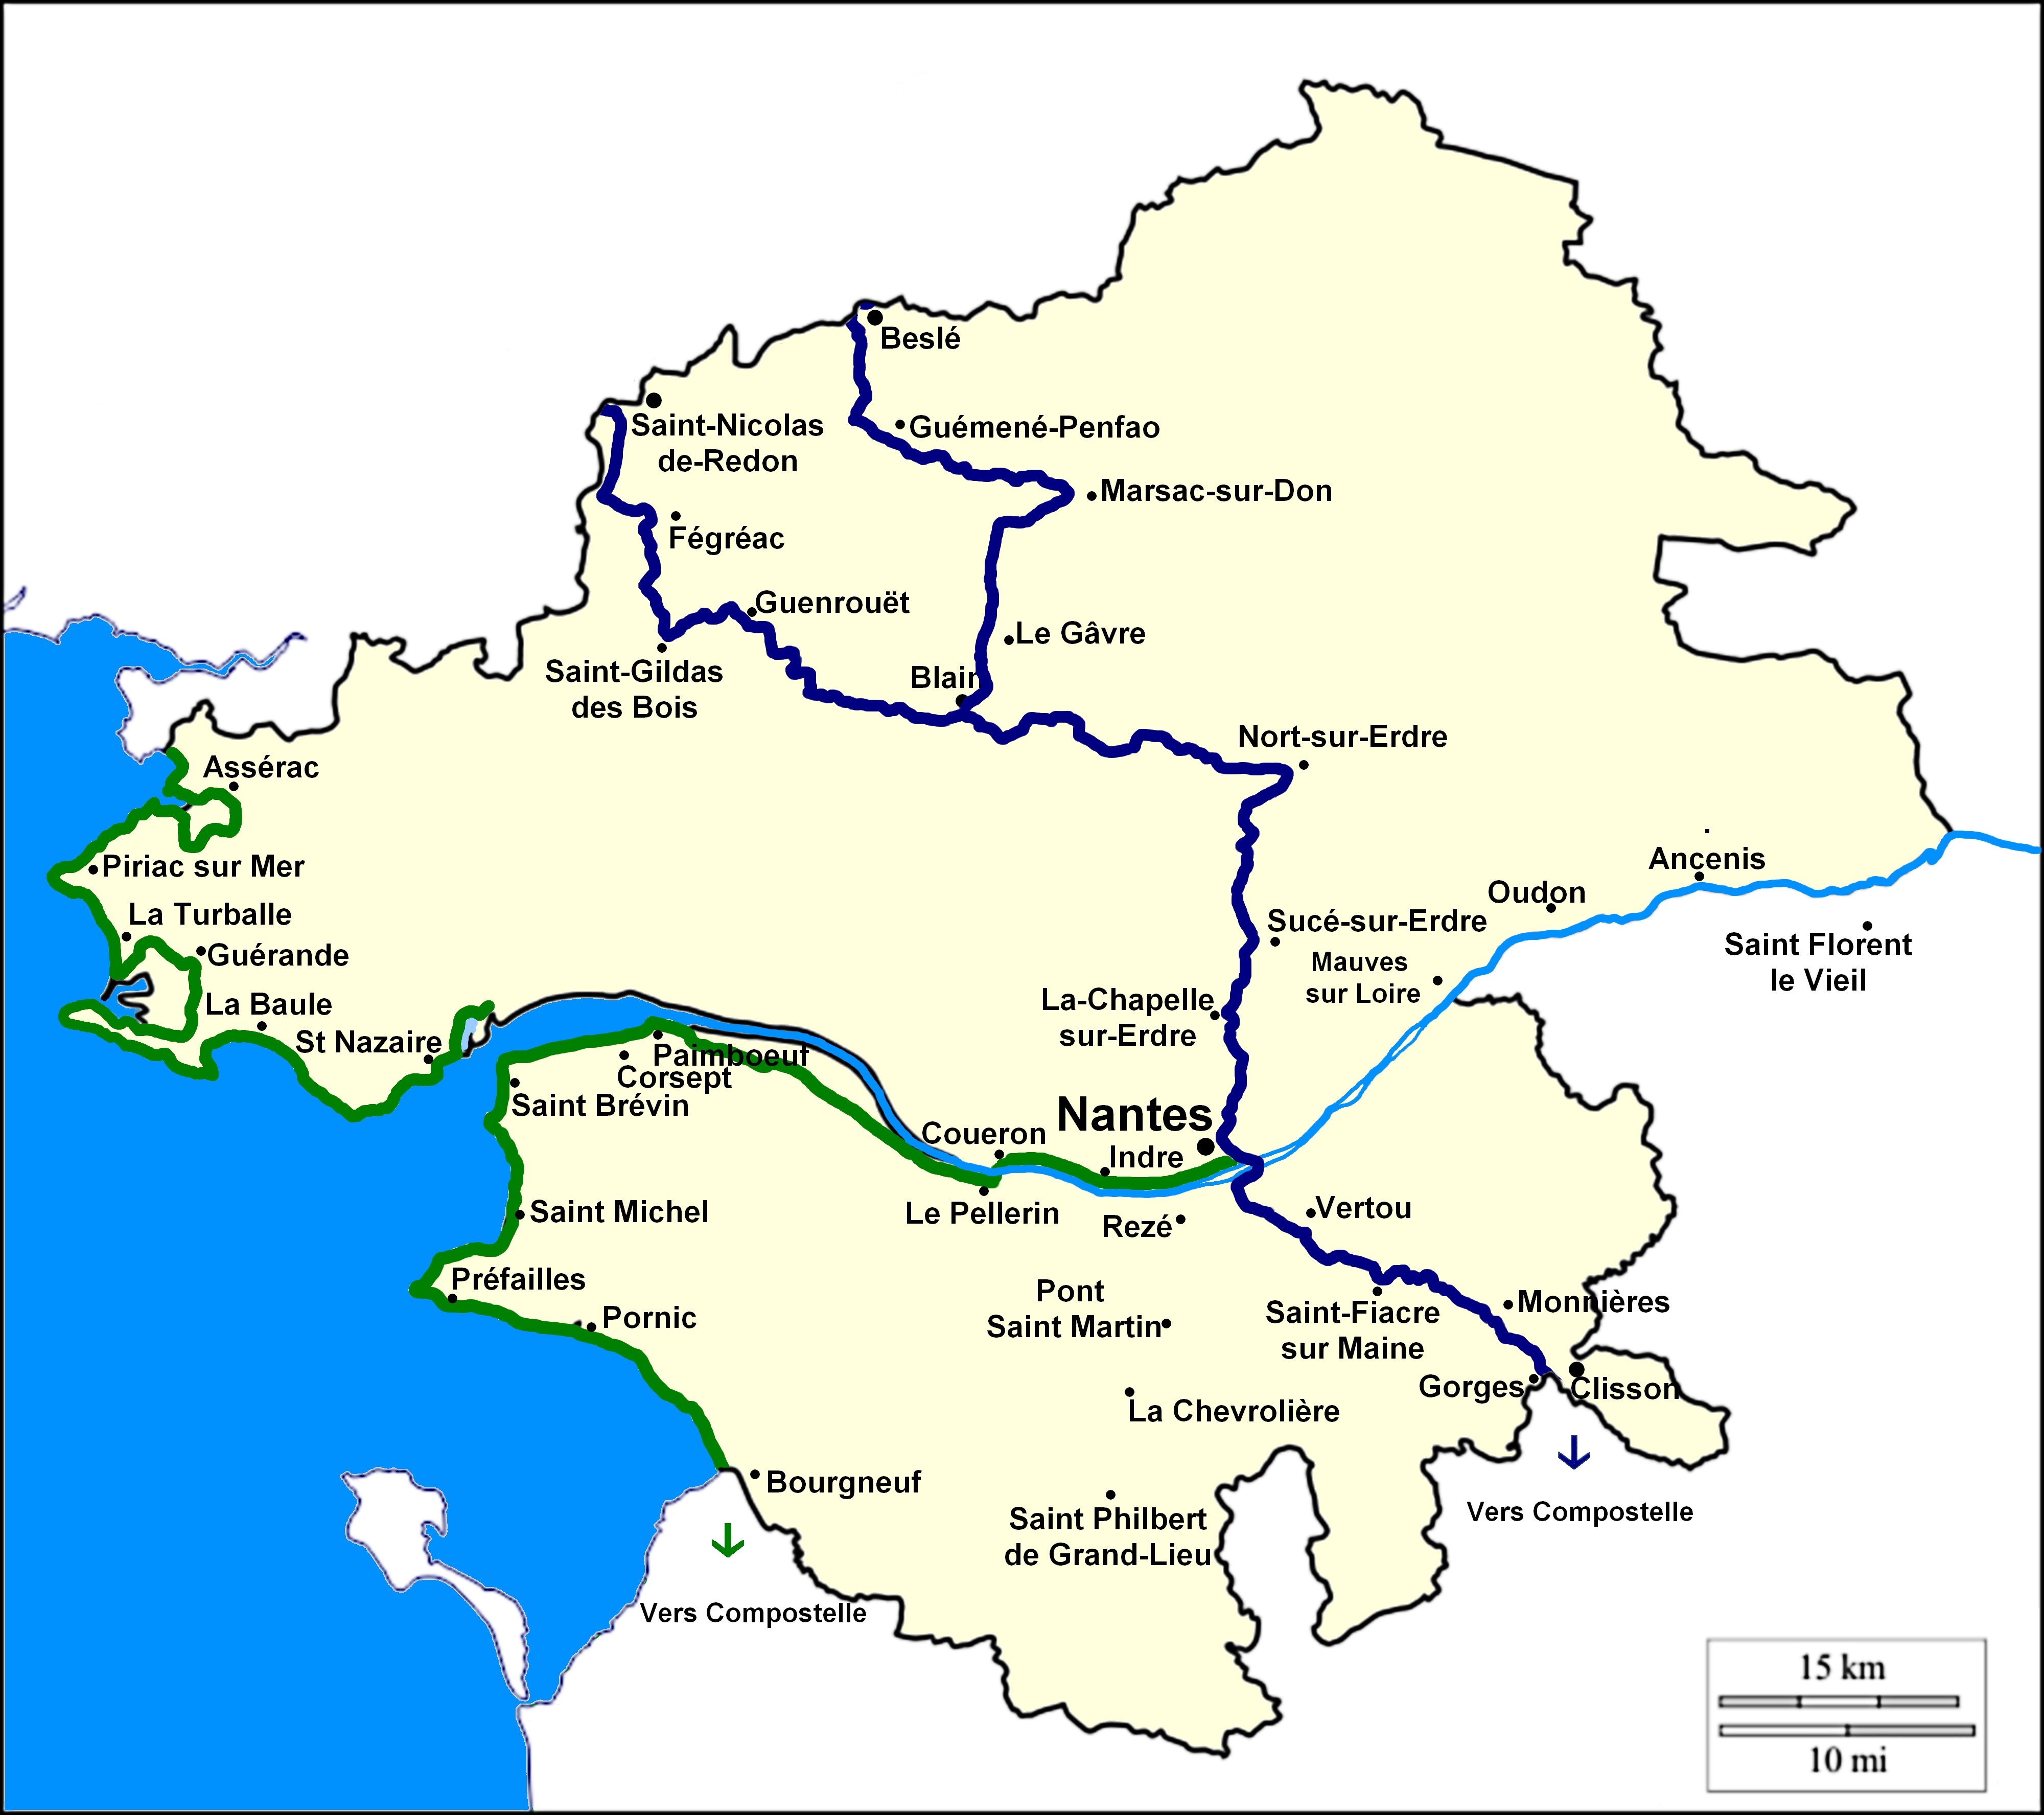 Carte des chemins en Loire-Atlantique